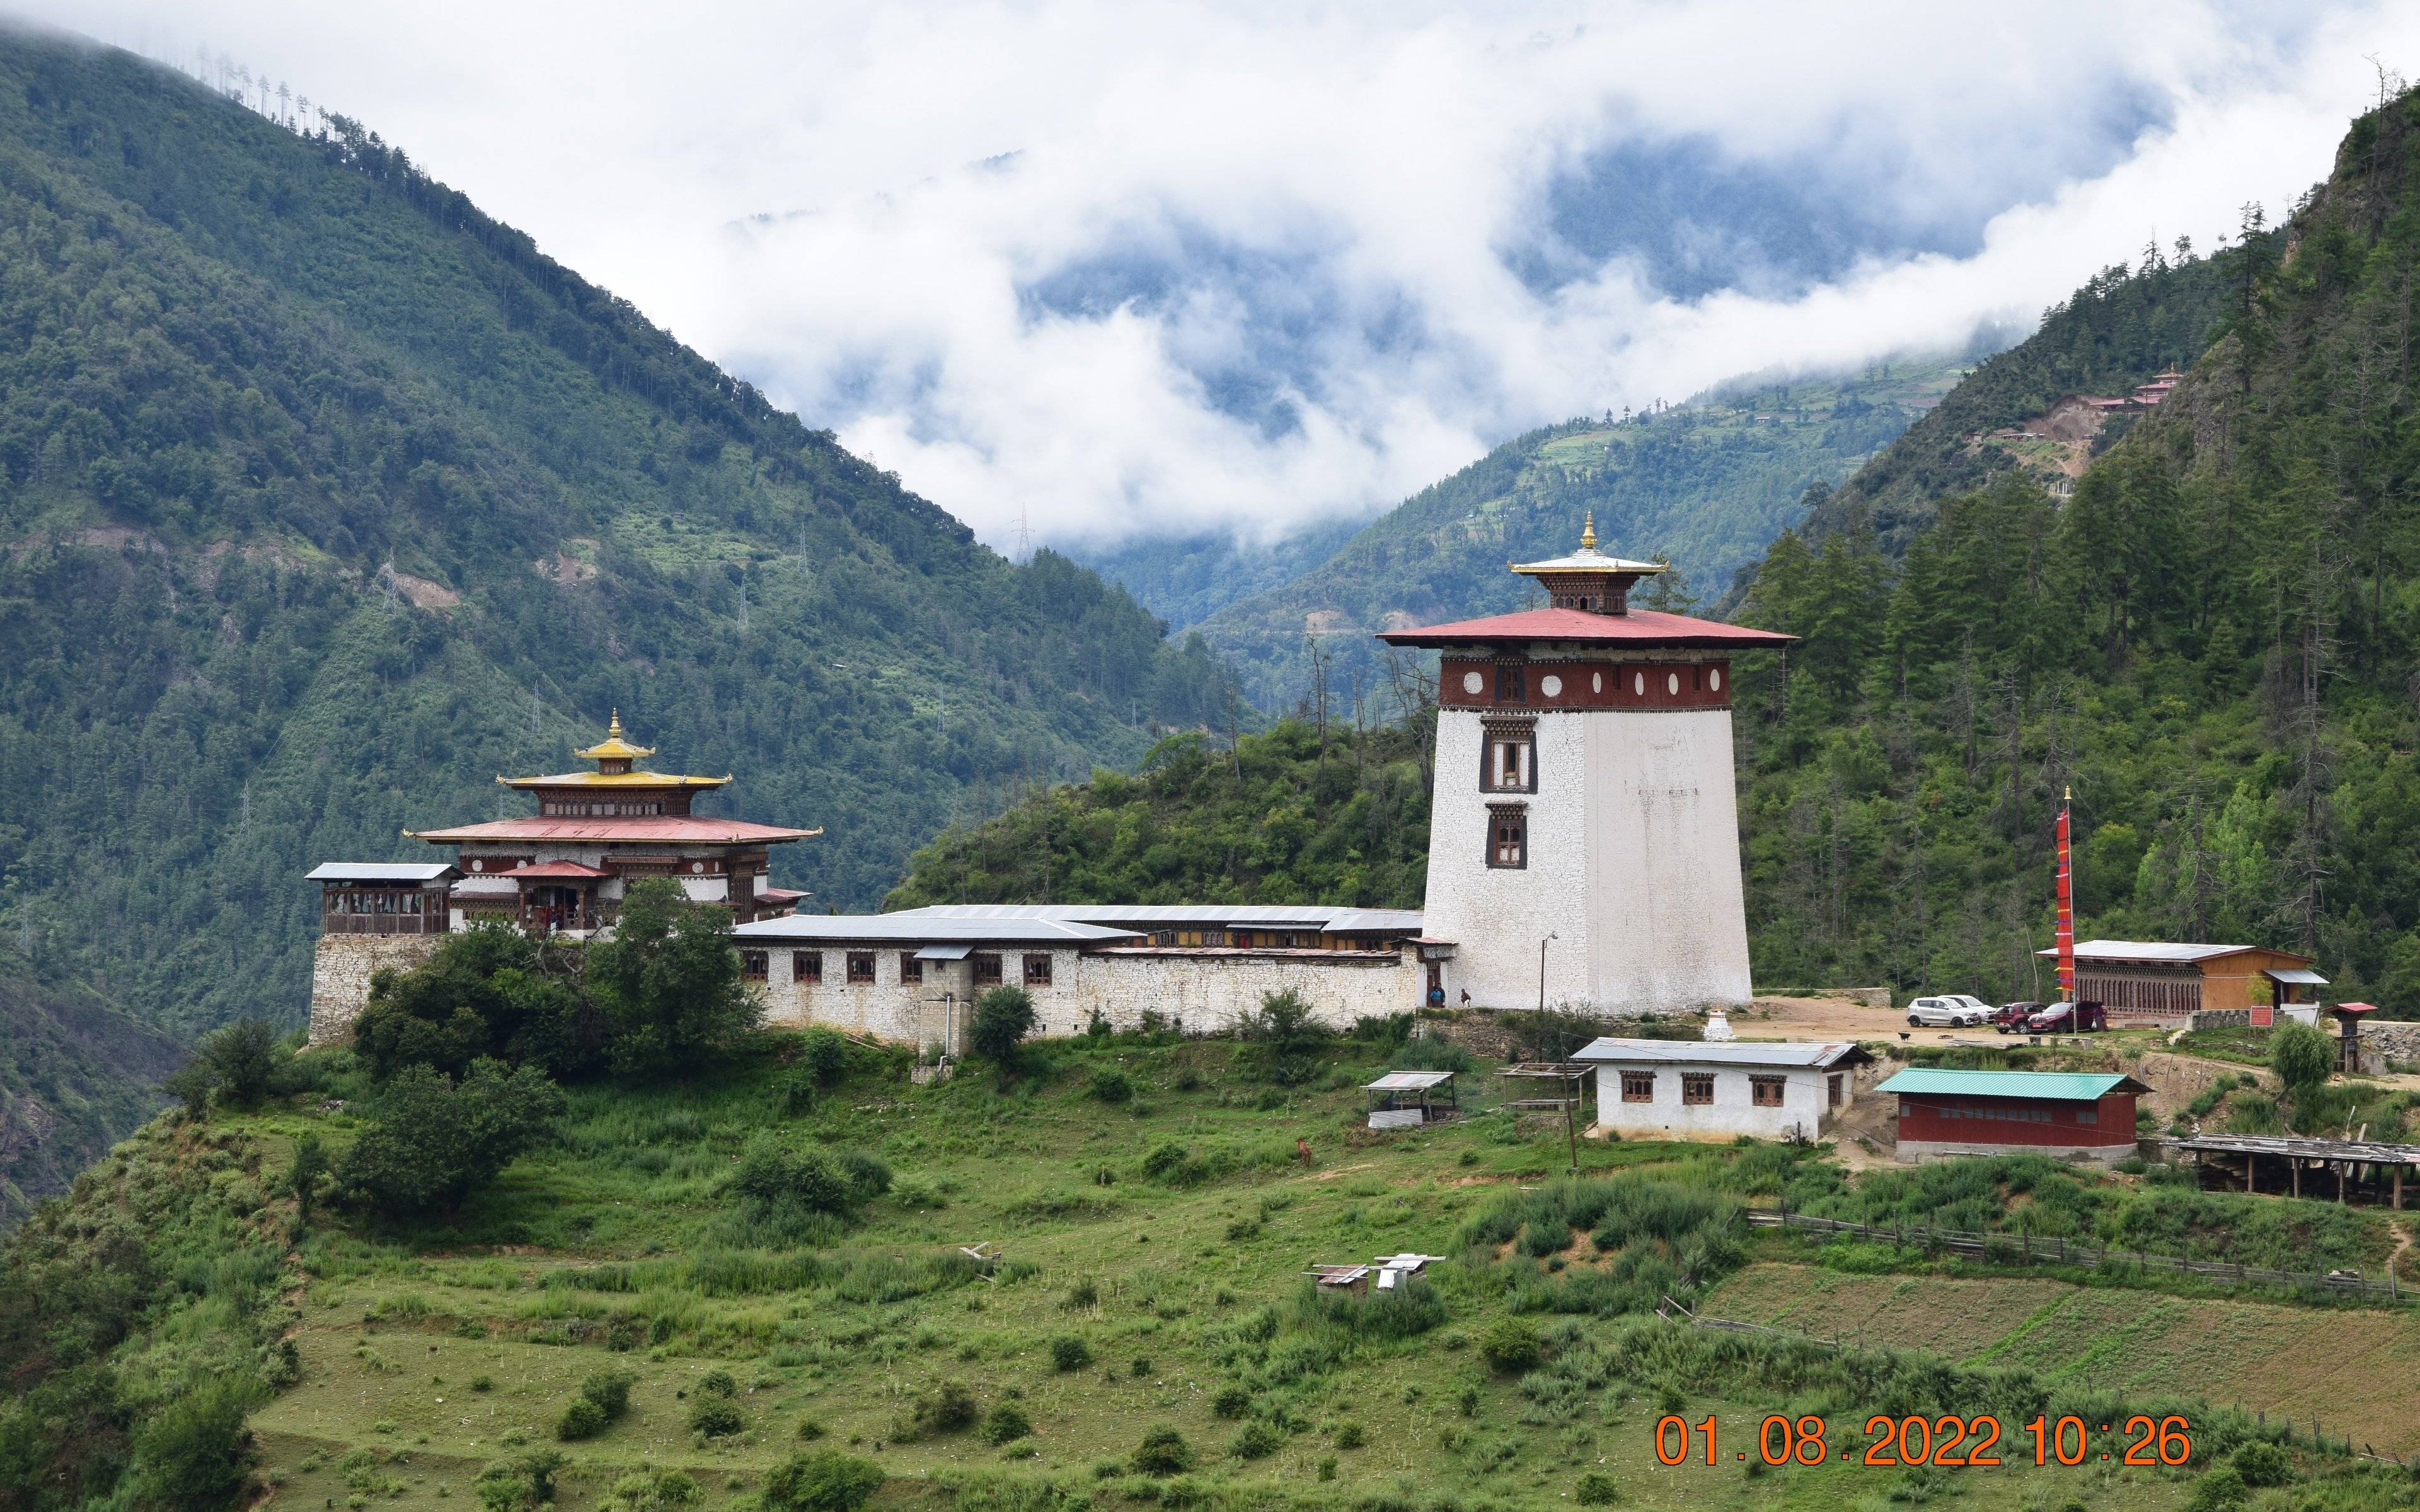 Fahrt nach Paro zu den Ruinen von Drukgyel Dzong